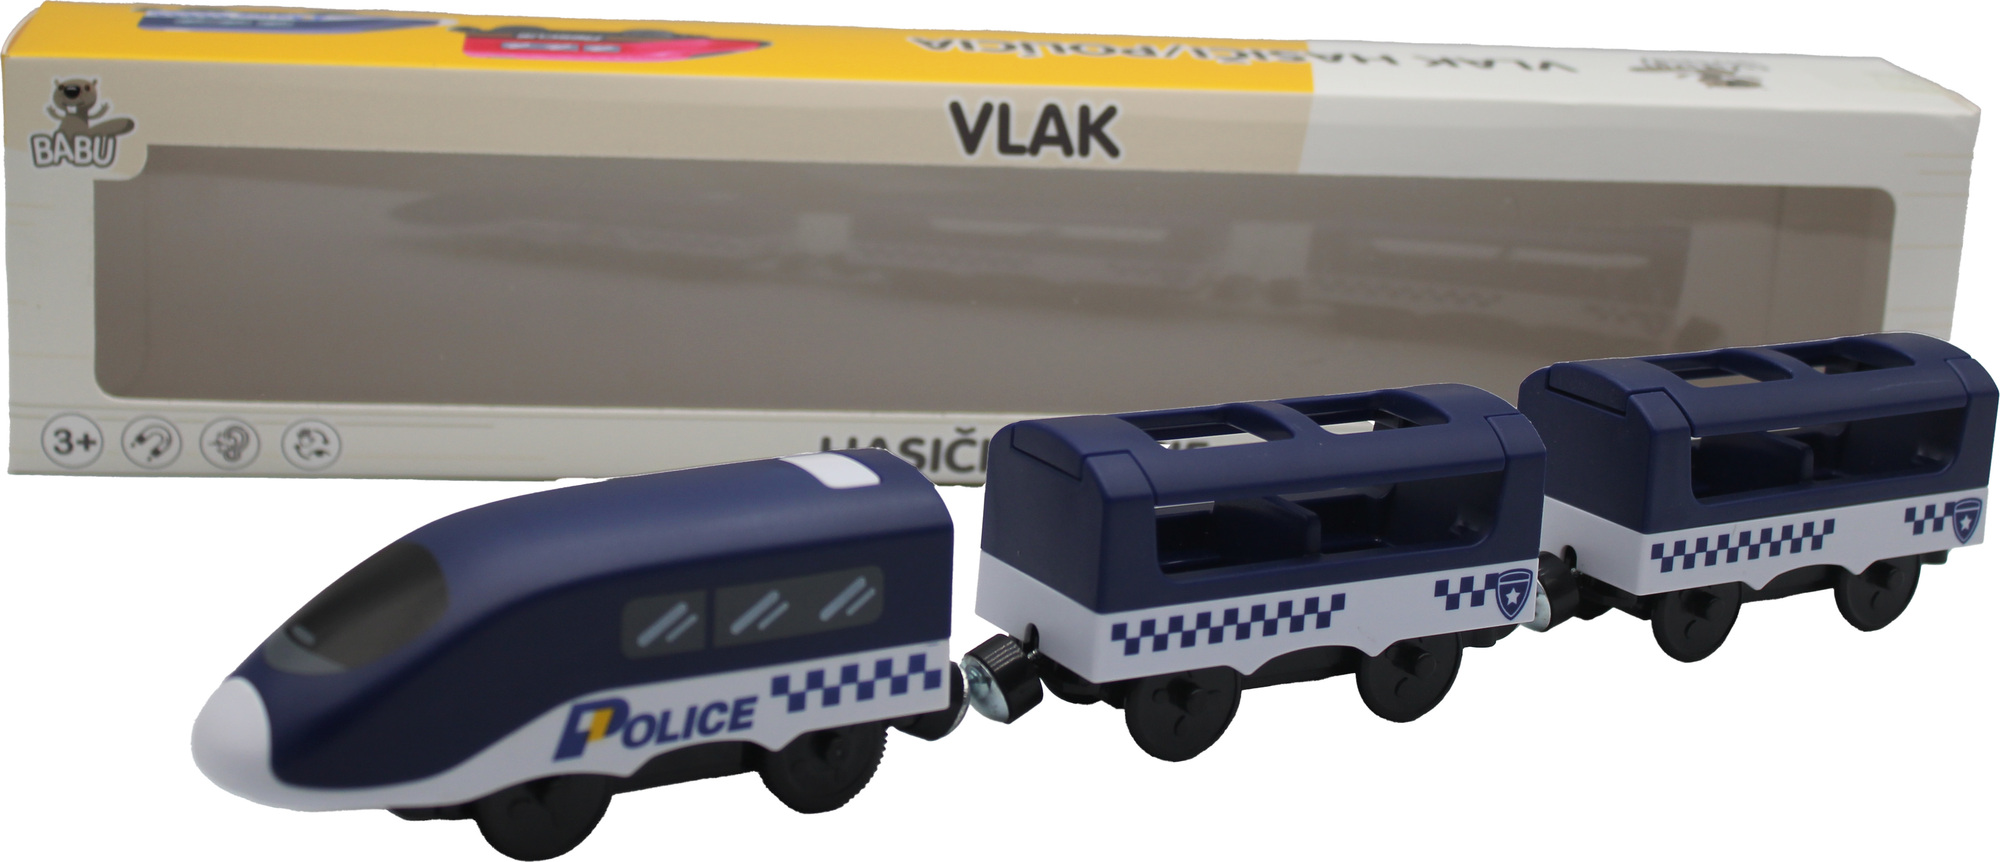 BABU vláčky - Policie s vagóny na baterie